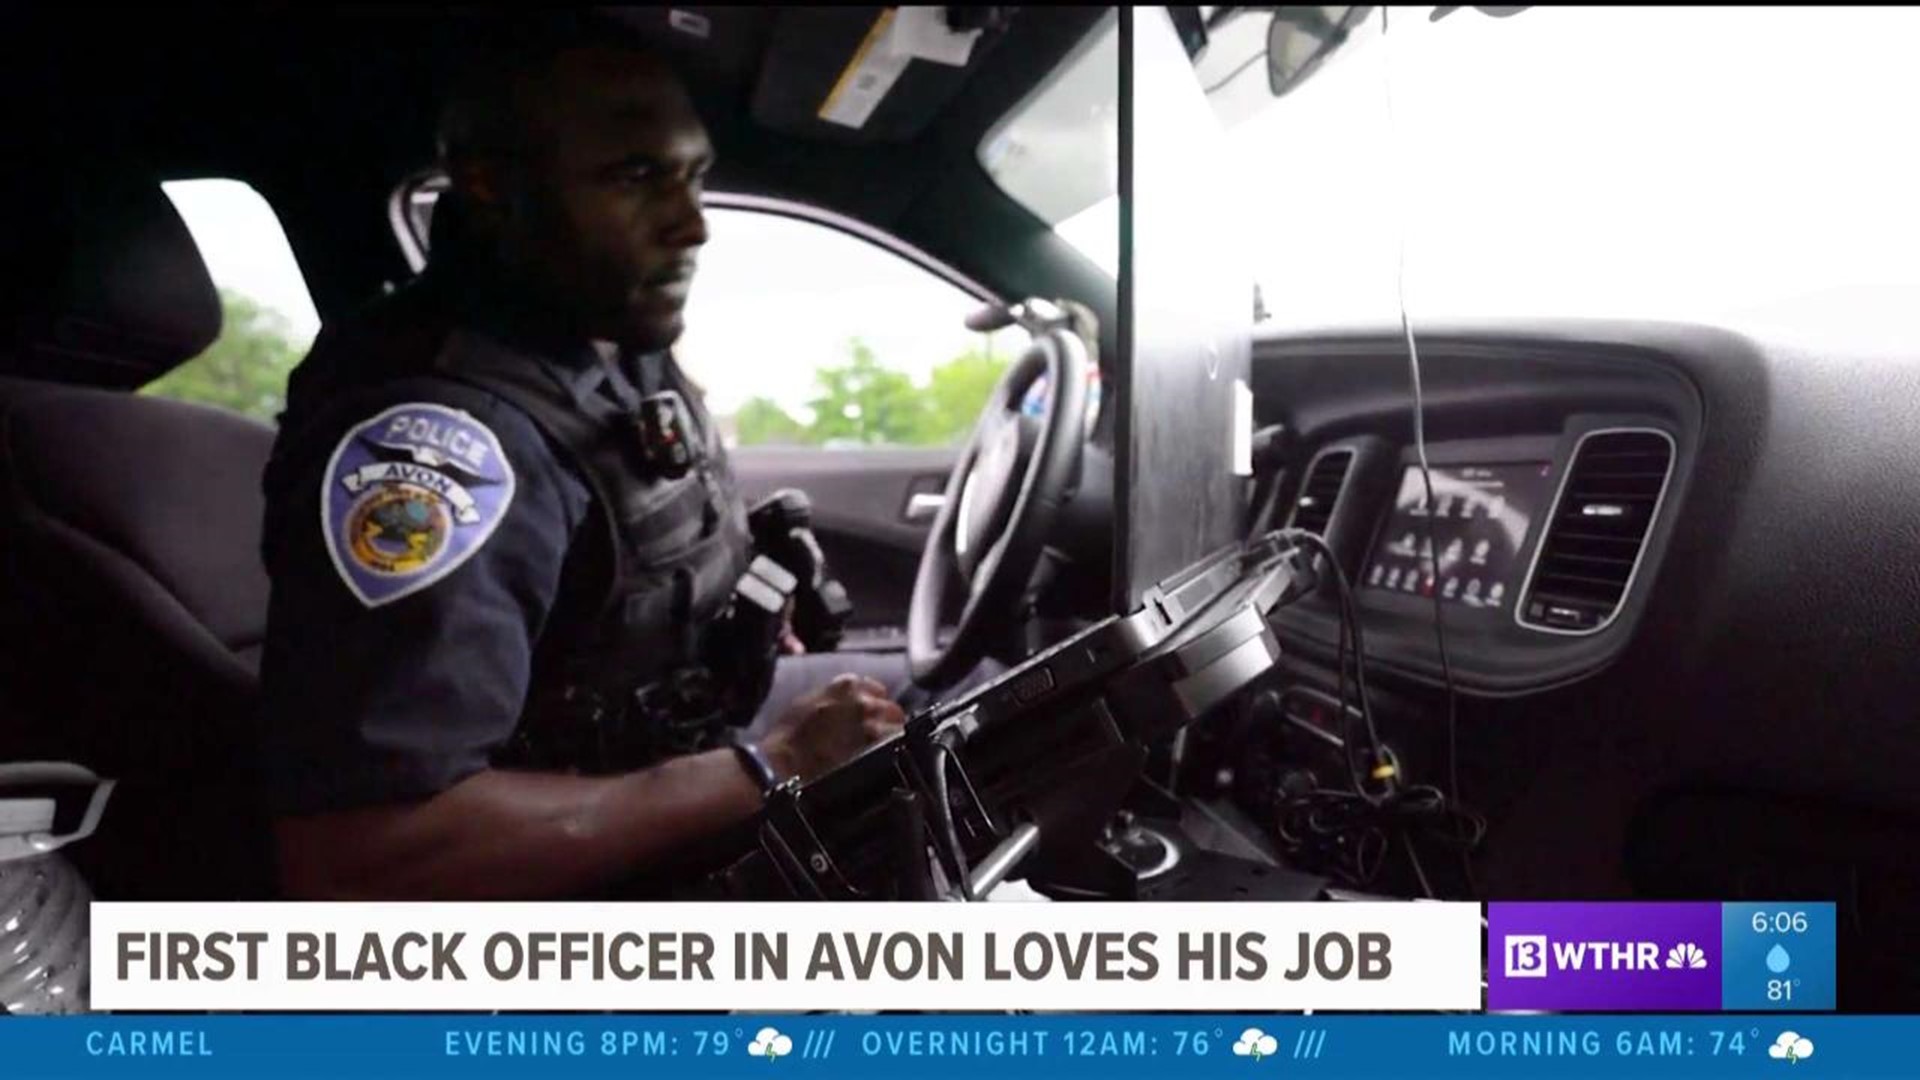 First Black officer in Avon